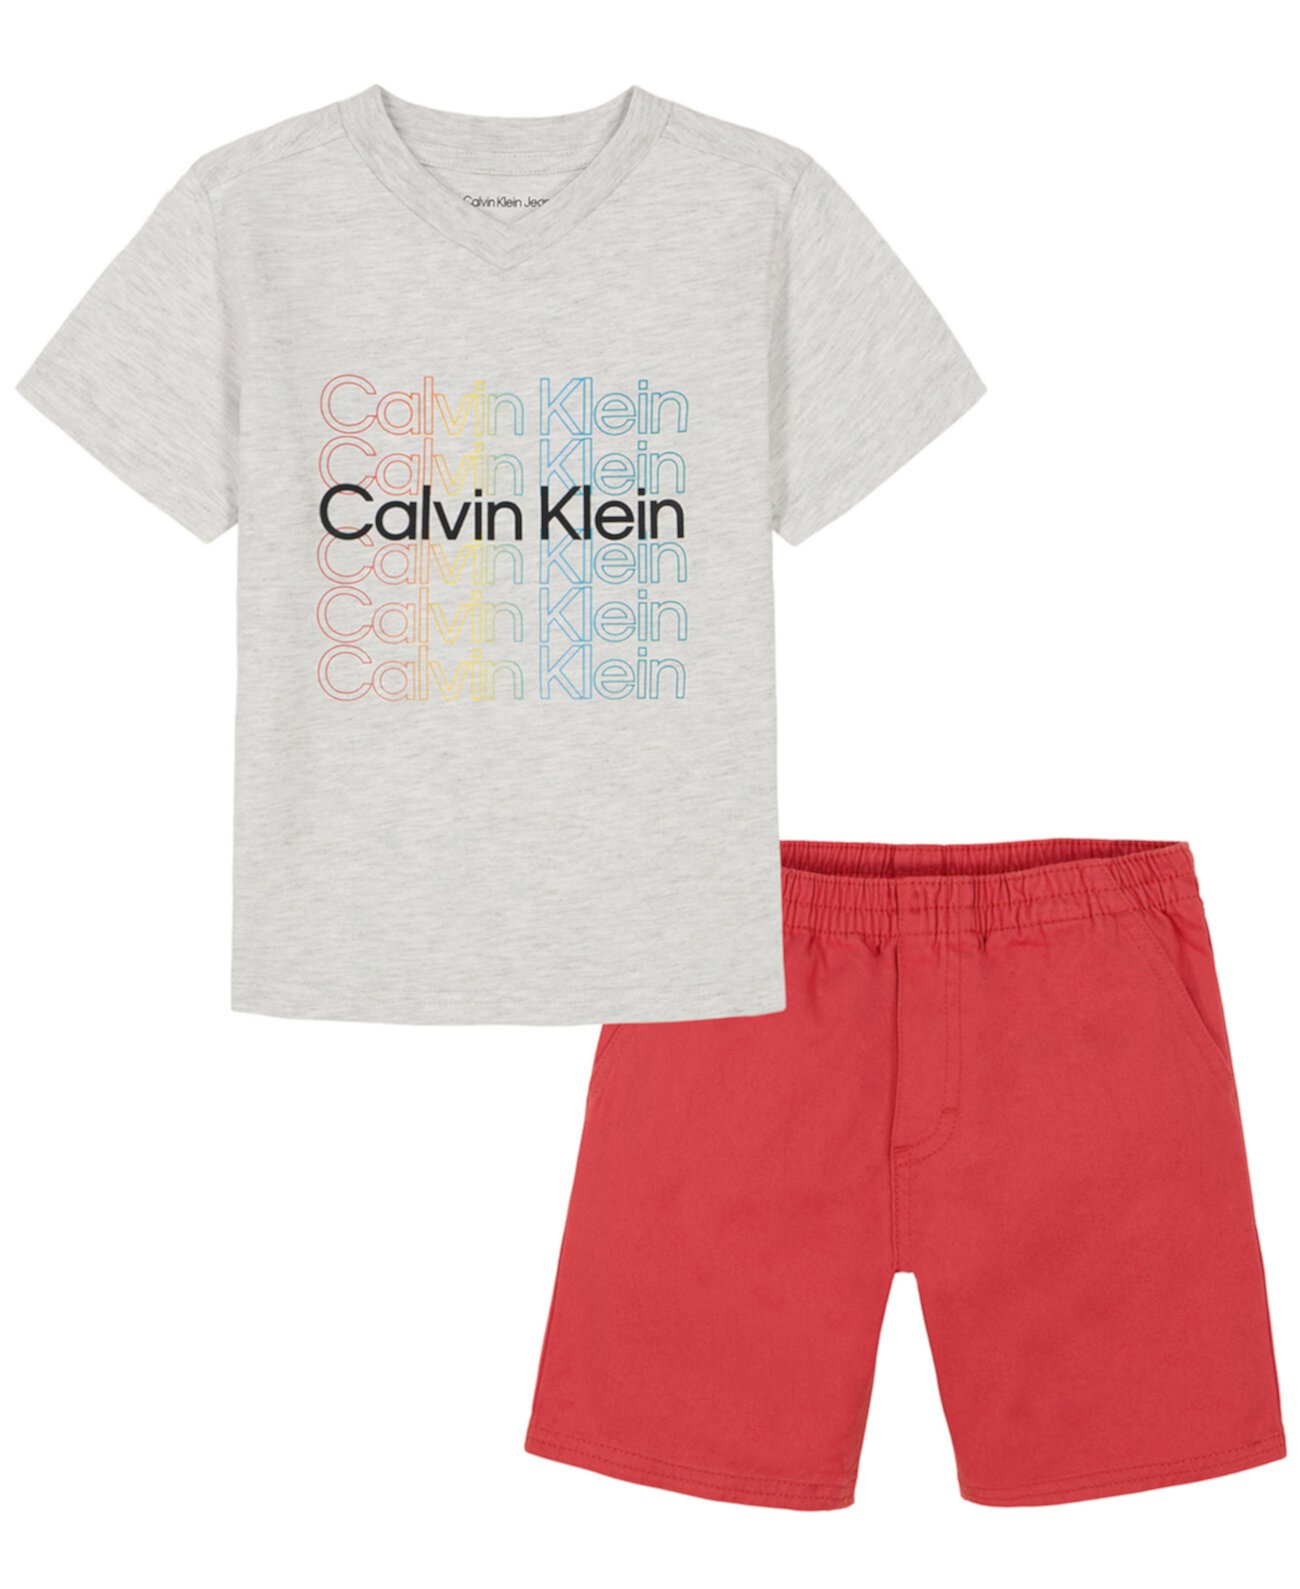 Футболка с v-образным вырезом с повторяющимся логотипом для мальчиков и саржевые шорты для мальчиков Calvin Klein